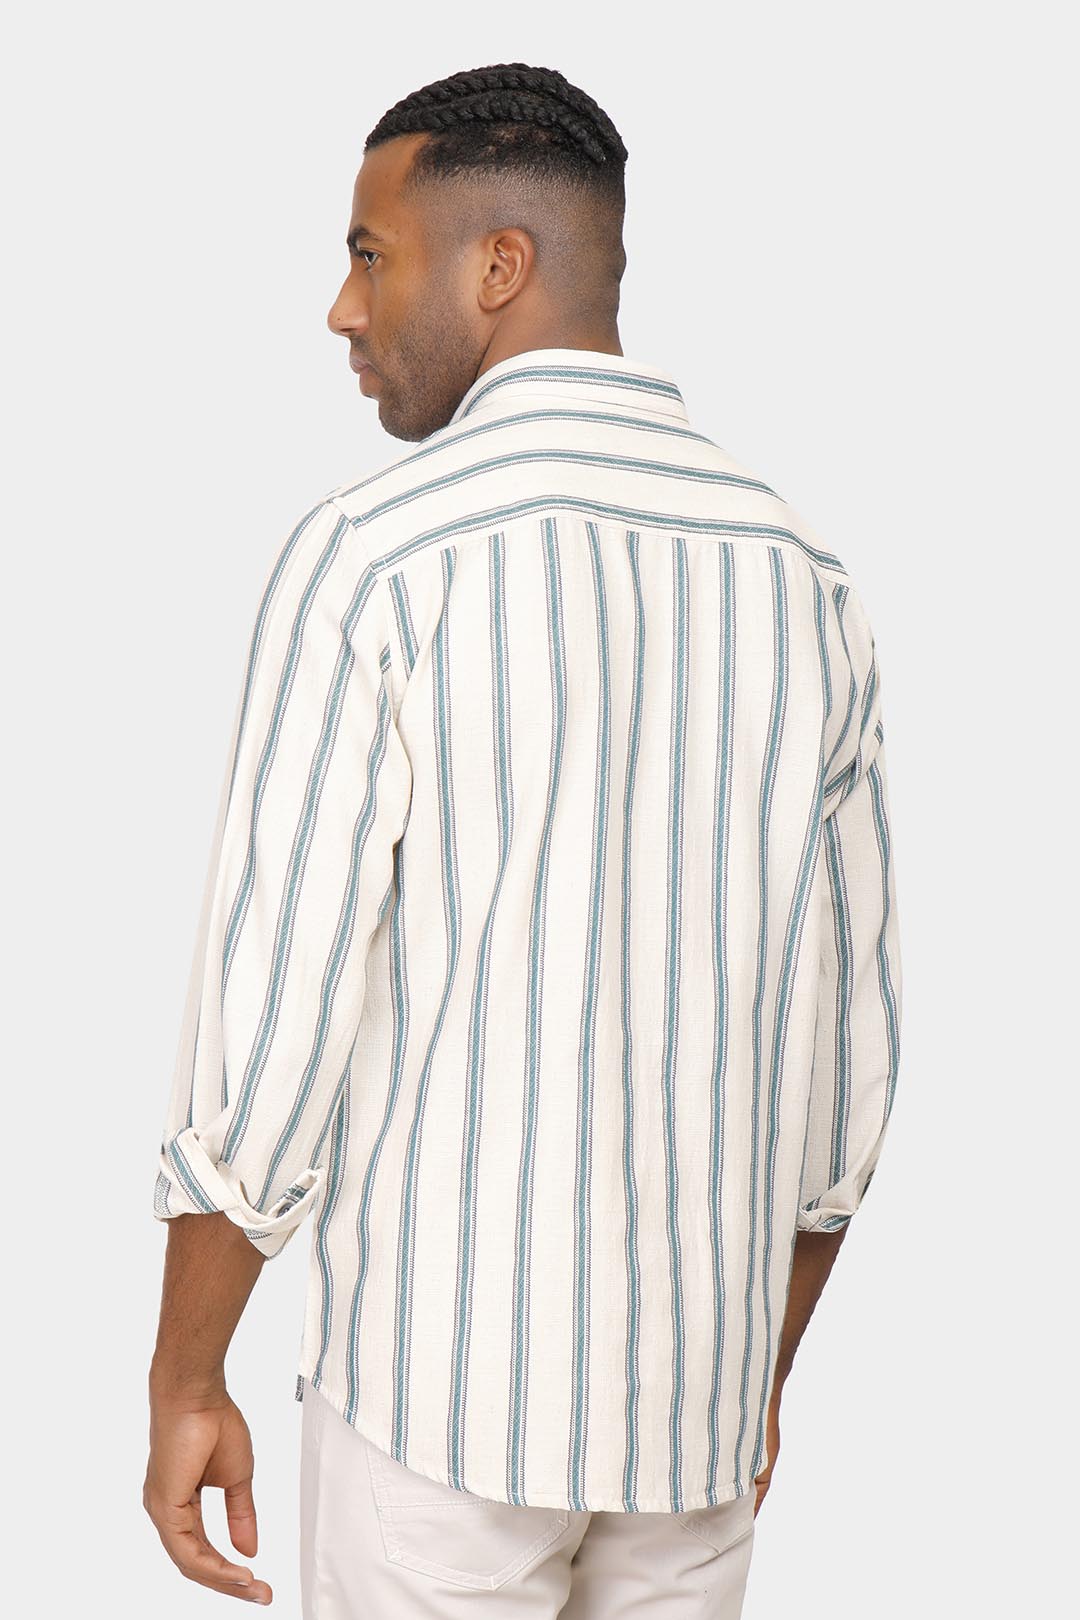 Beige Striped Slim Fit Shirt